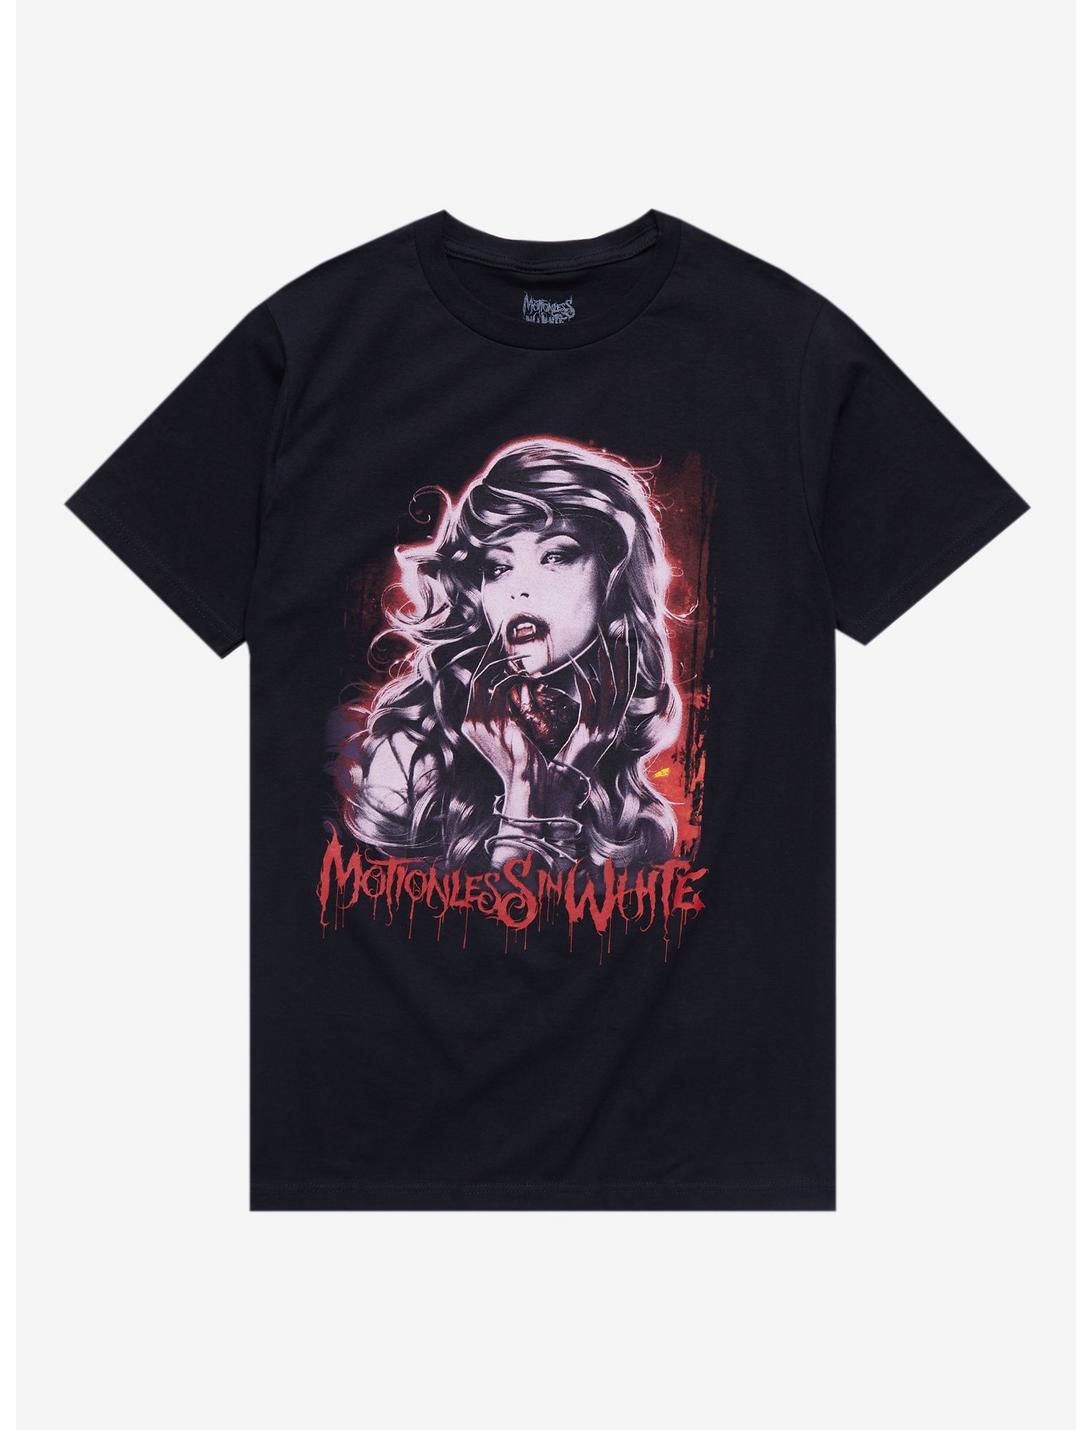 Motionless In White Vampire Boyfriend Fit Girls T-Shirt, BLACK, hi-res